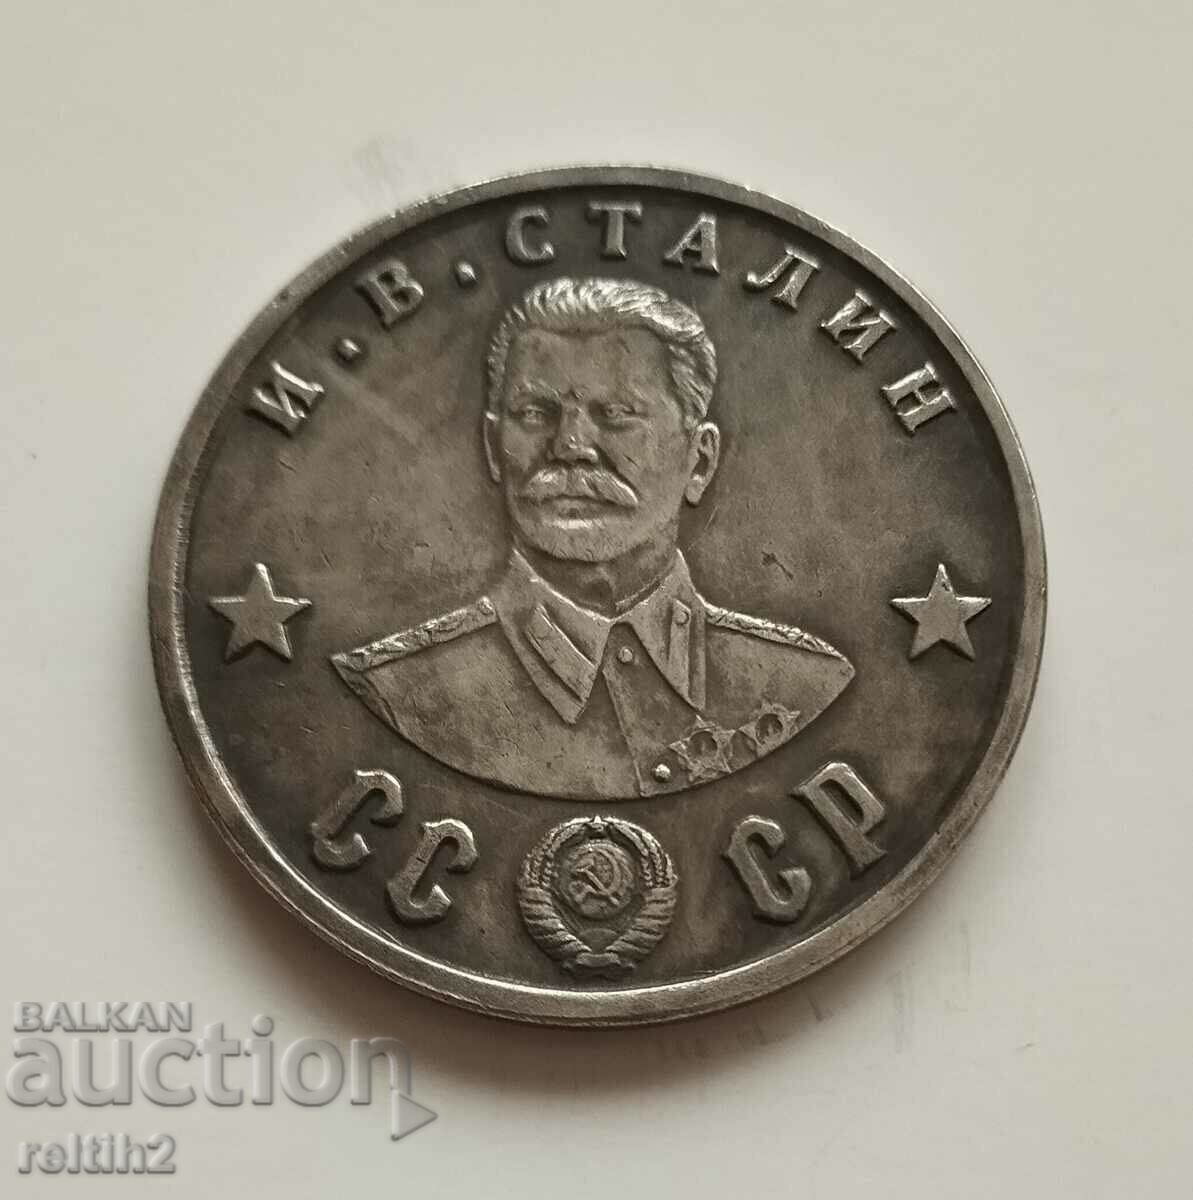 Coin 100 Rubles 1945 Stalin - replica!